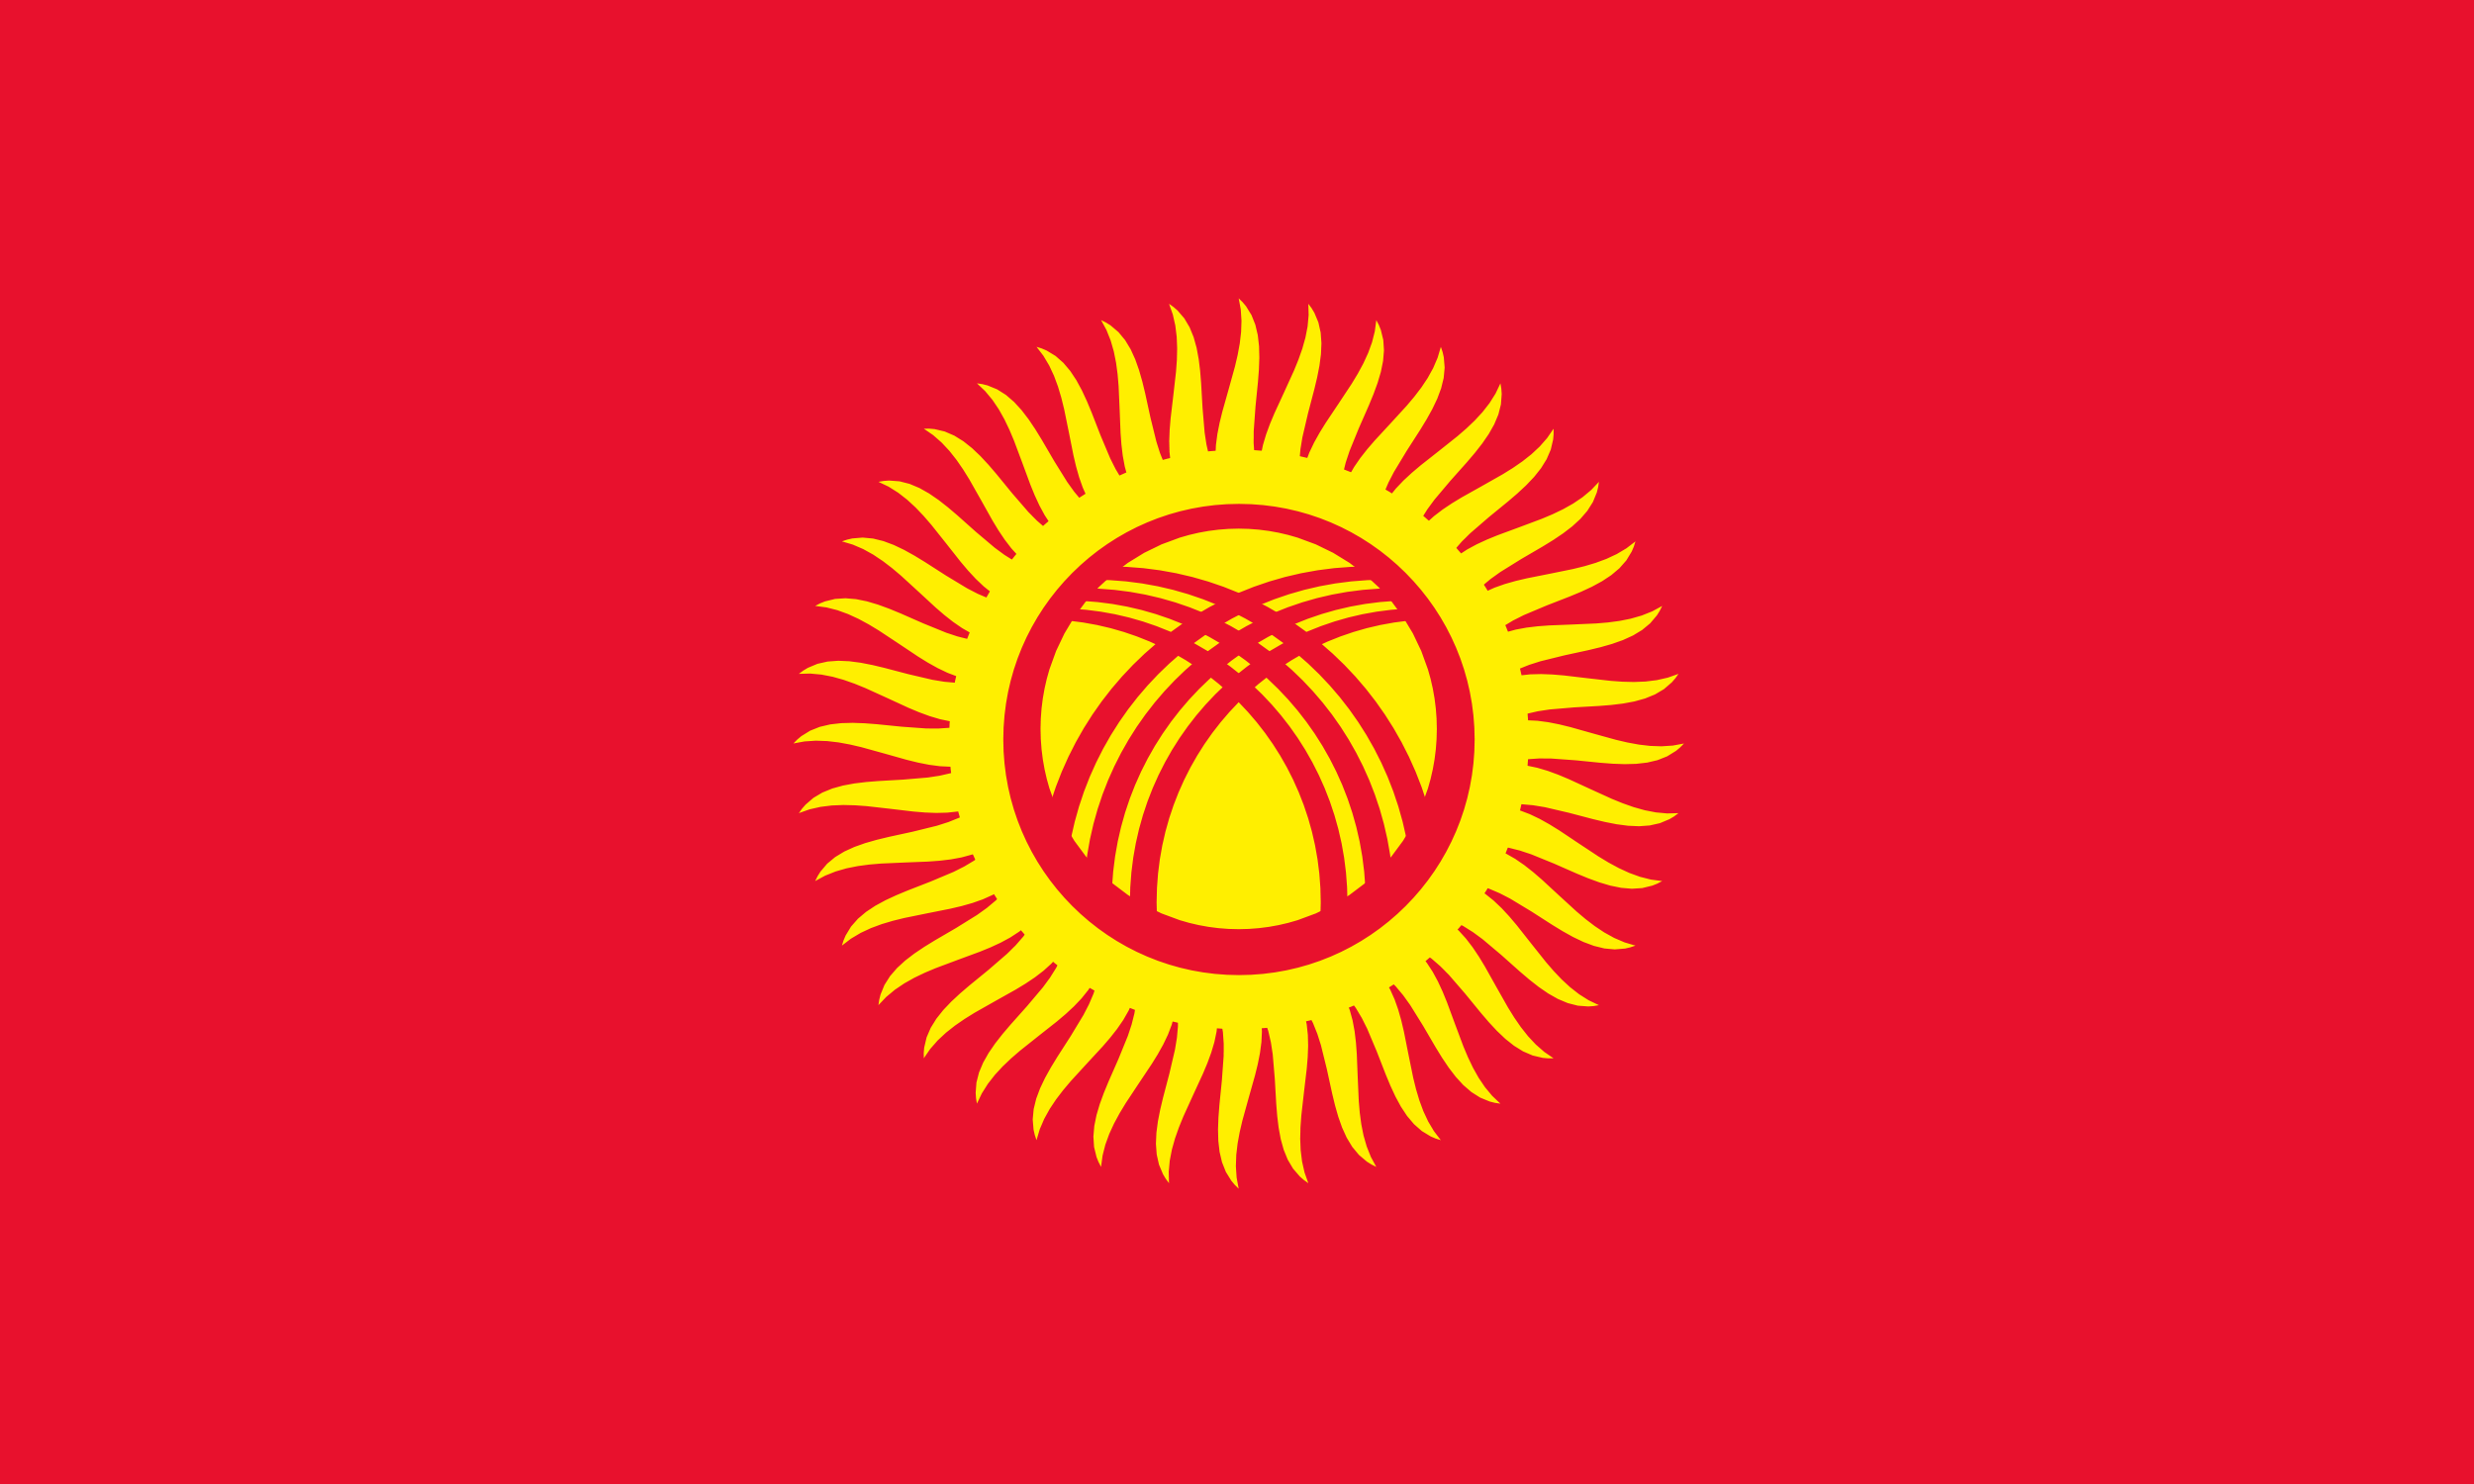 پرچم قرقیزستان